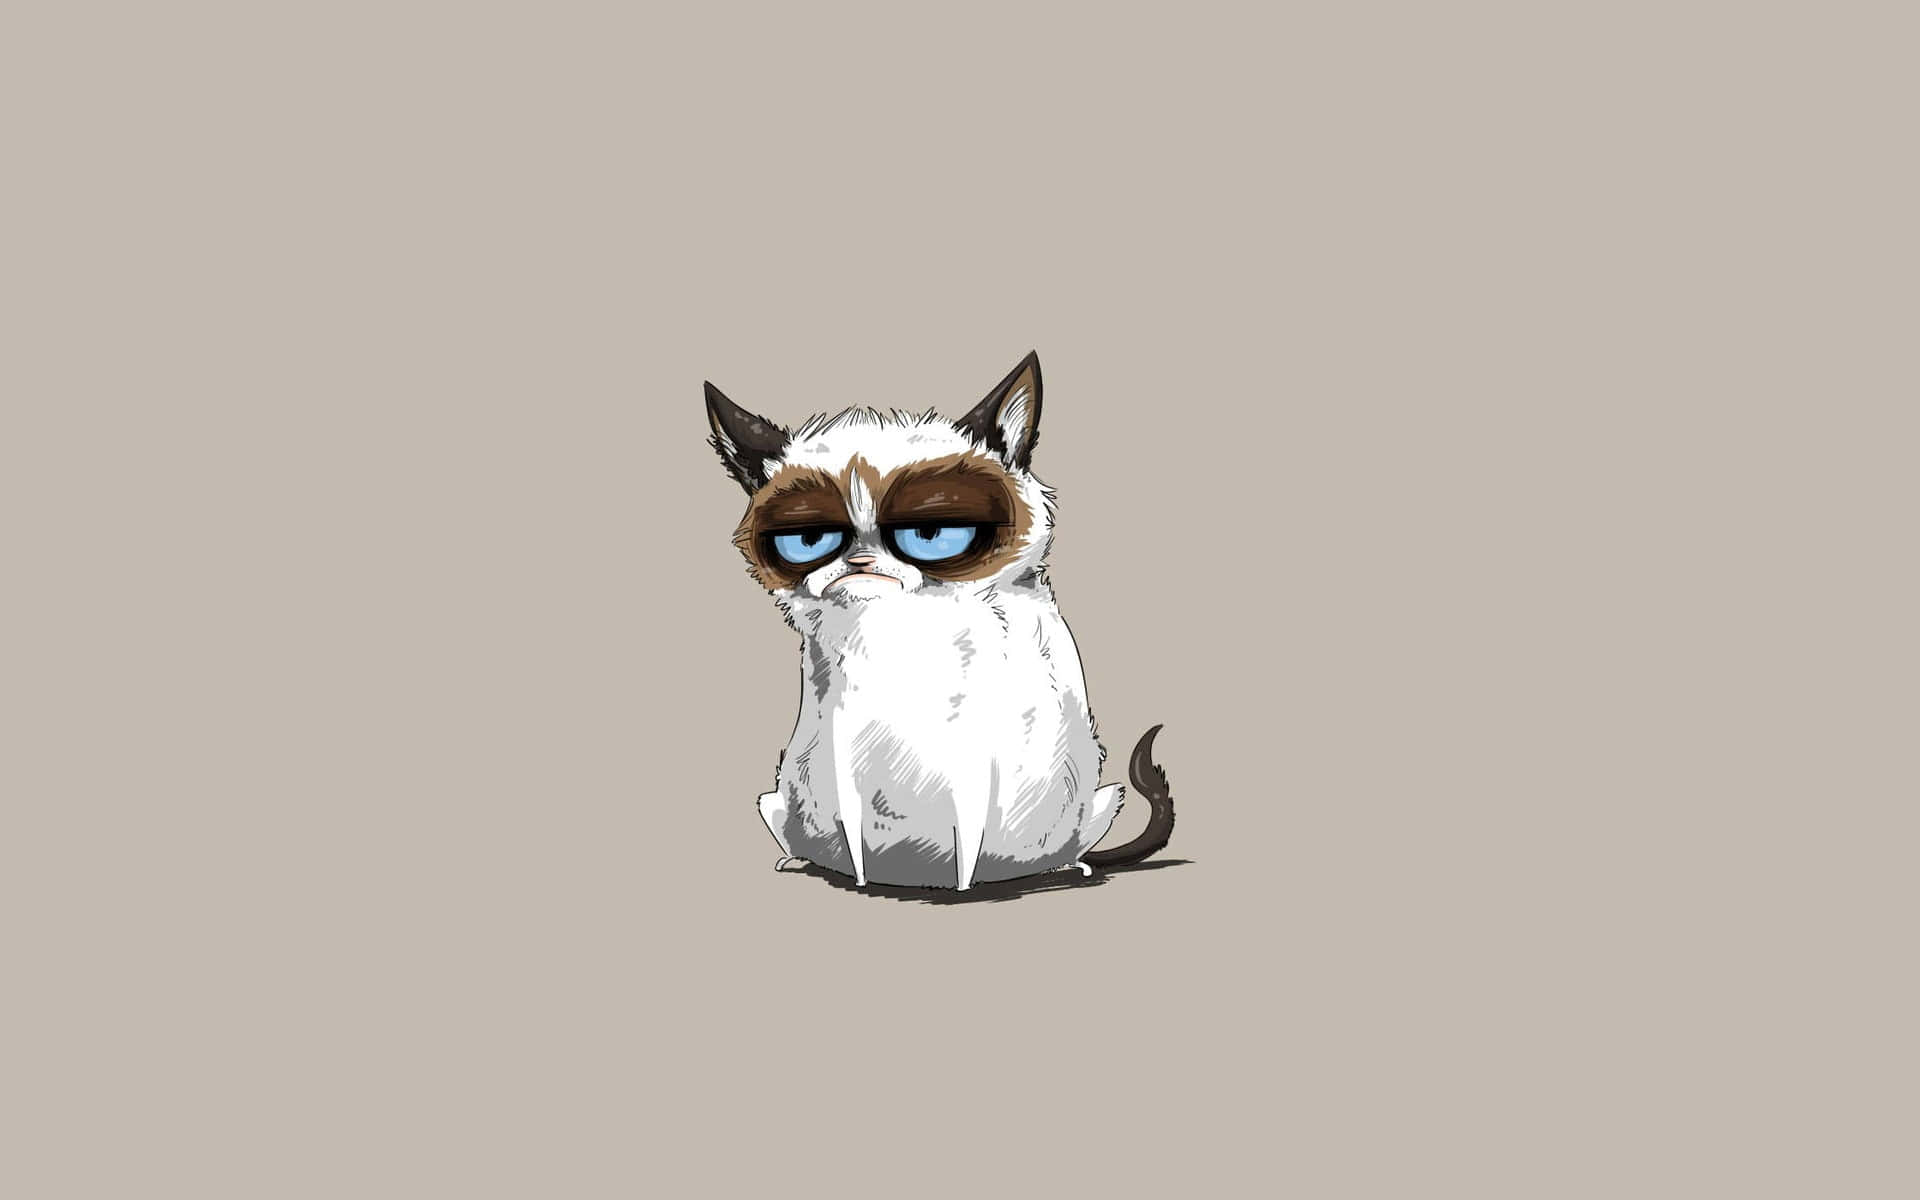 Grumpycat Baggrunde, Grumpy Cat Baggrunde, Grumpy Cat Baggrunde, Grumpy Cat Baggrunde.